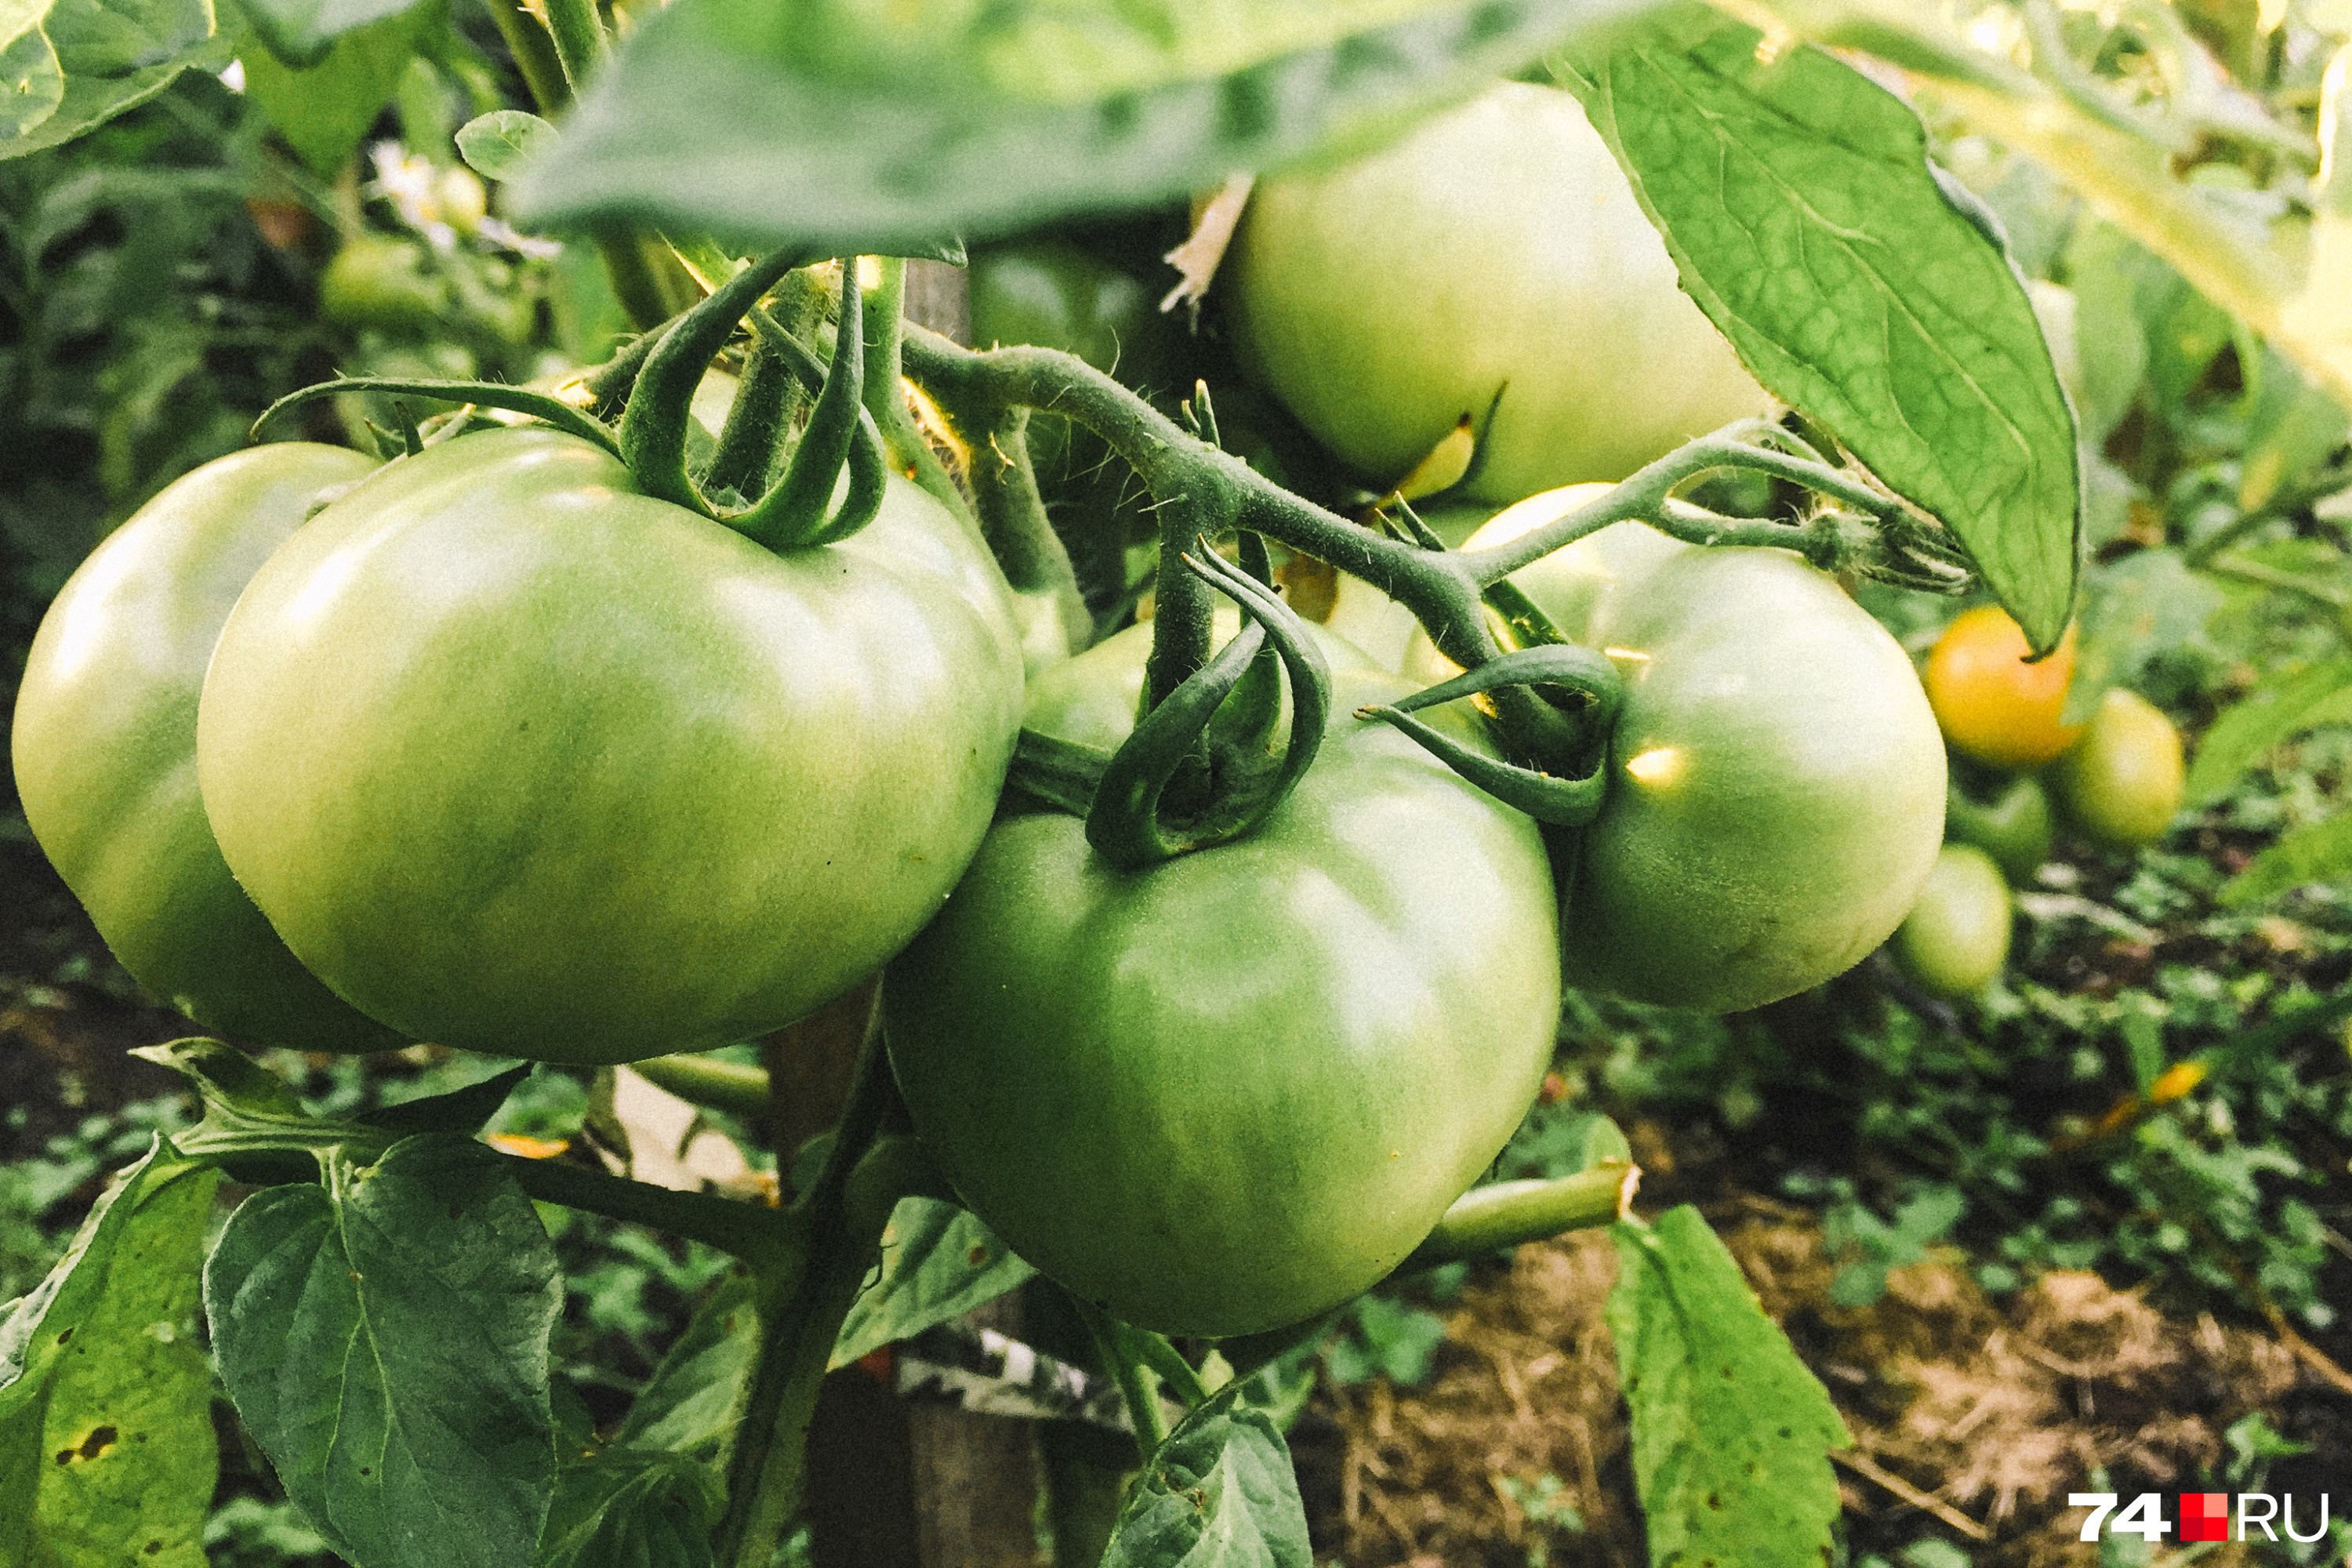 Как правильно выращивать помидоры, самые распространенные болезни томатов -22 июля 2021 - 29.ru